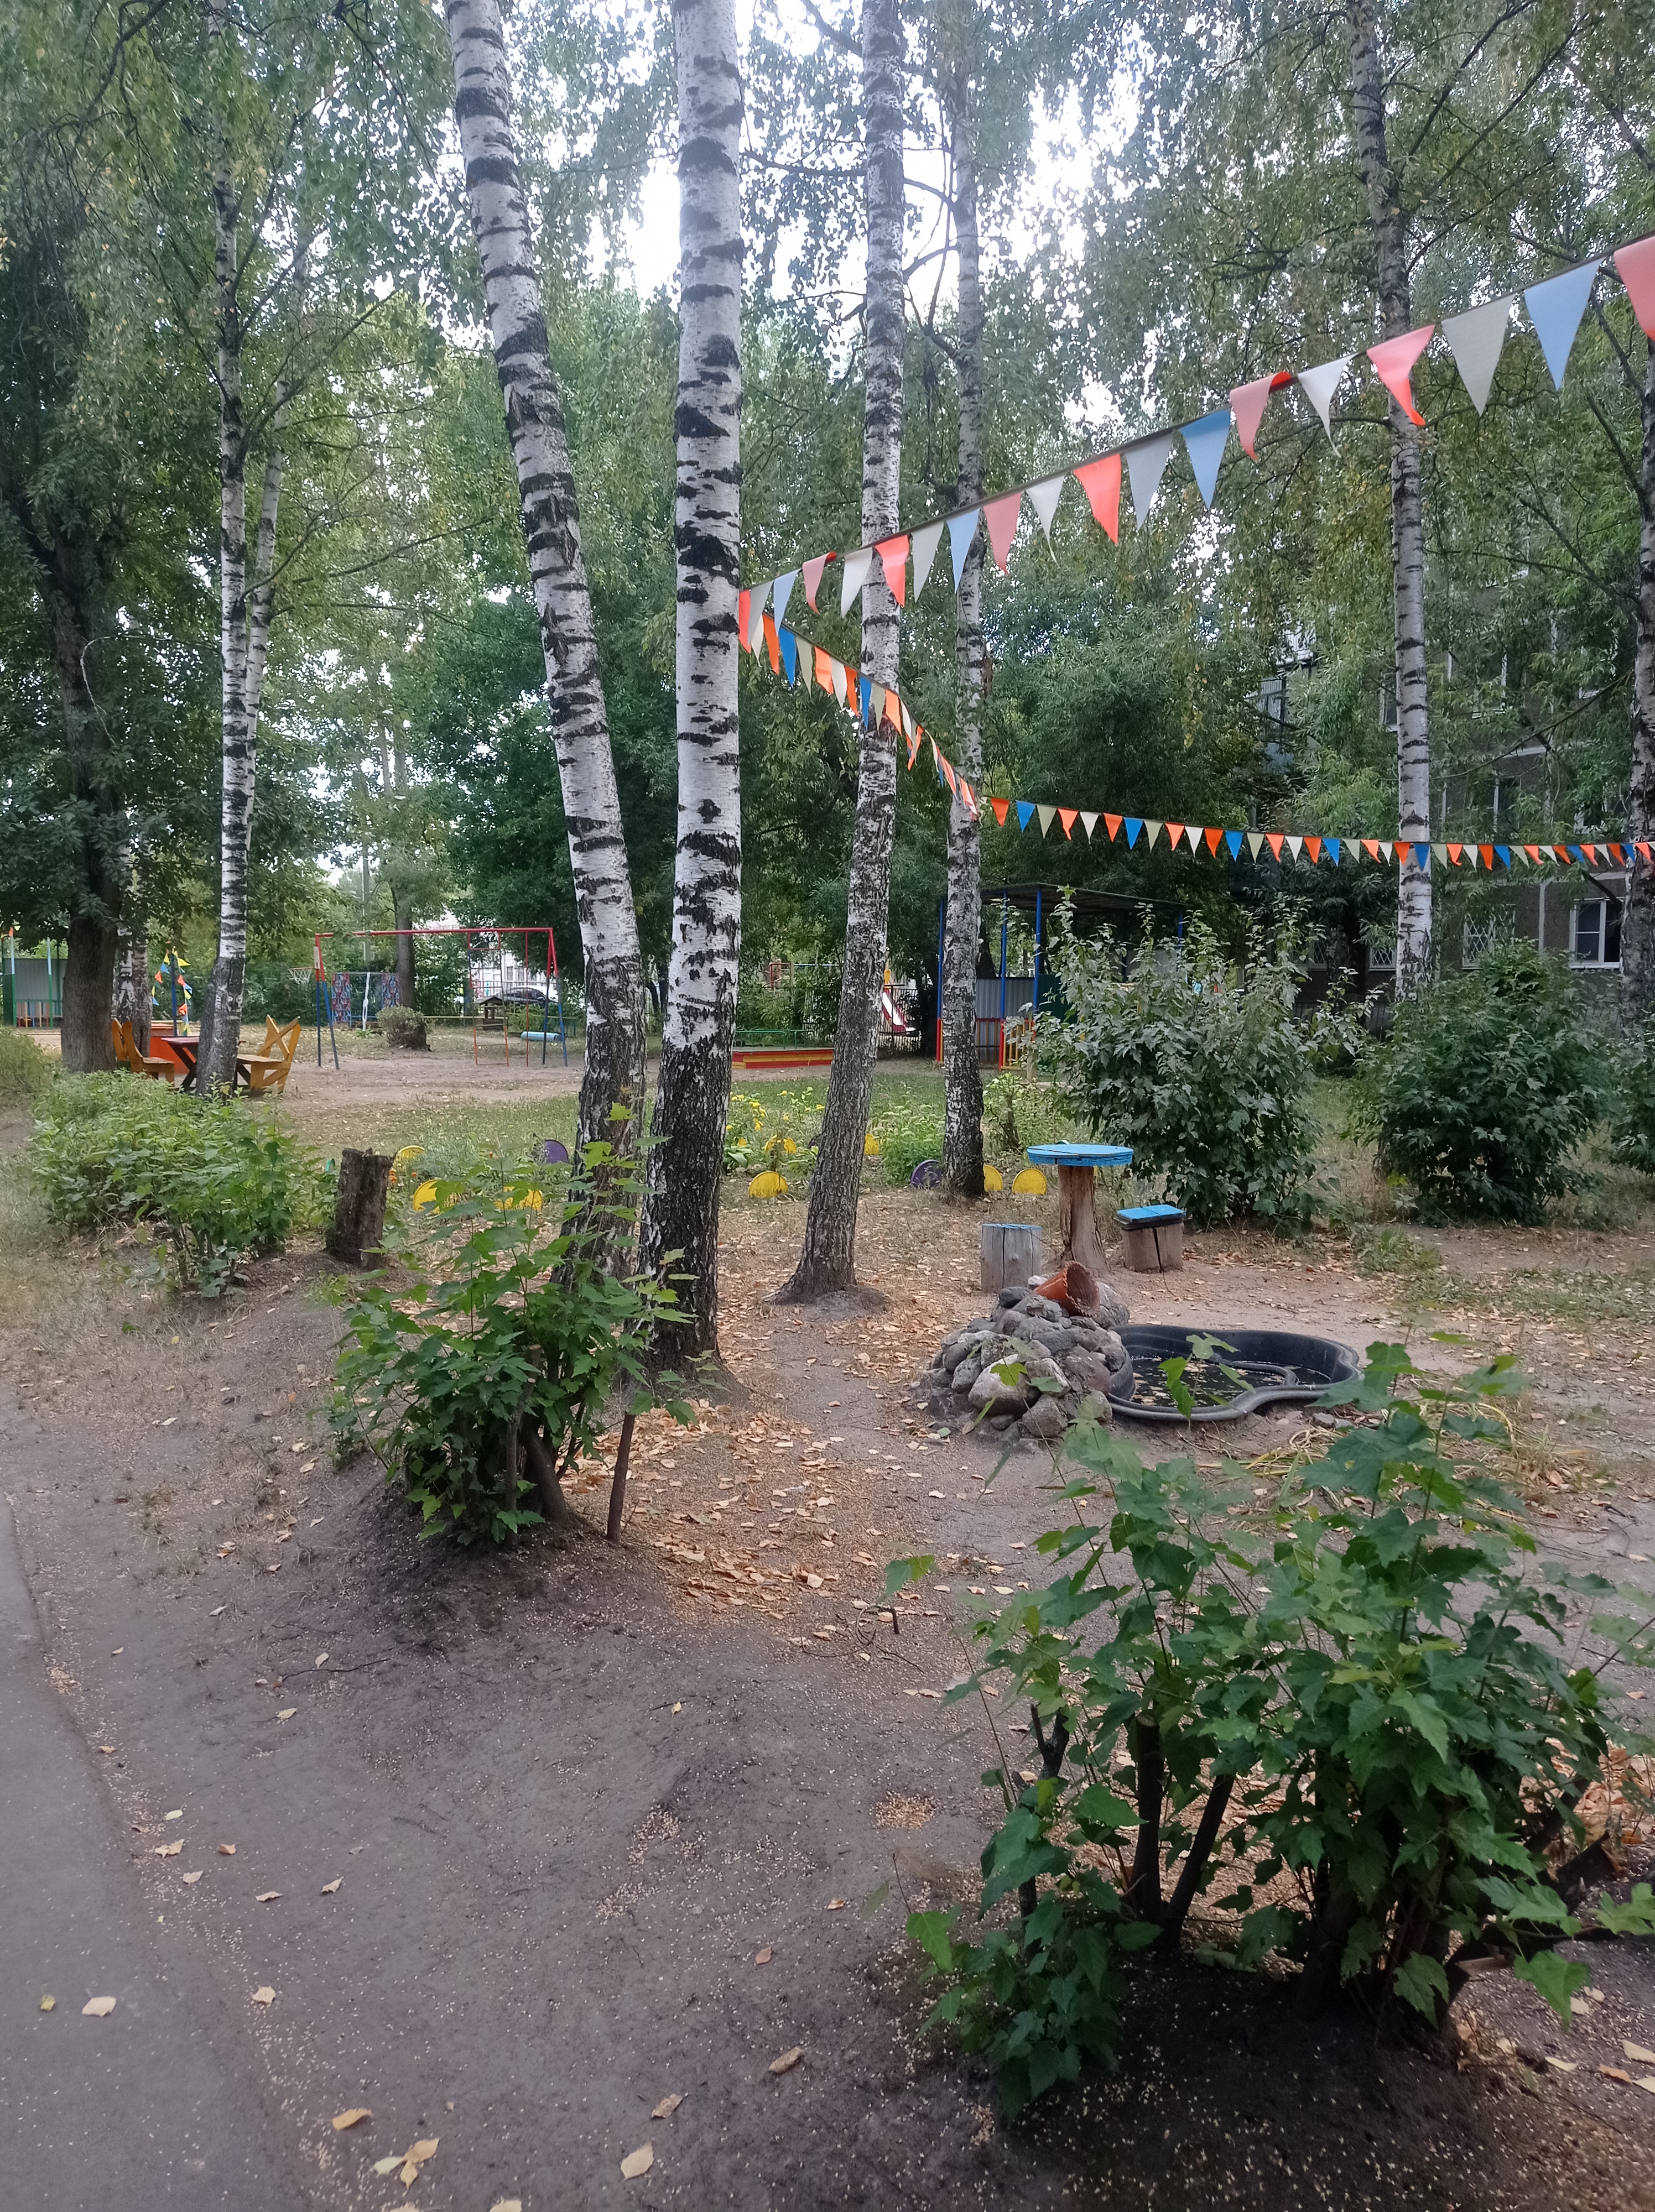 Участок детского сада "Солнышко" на проспекте Строителей.